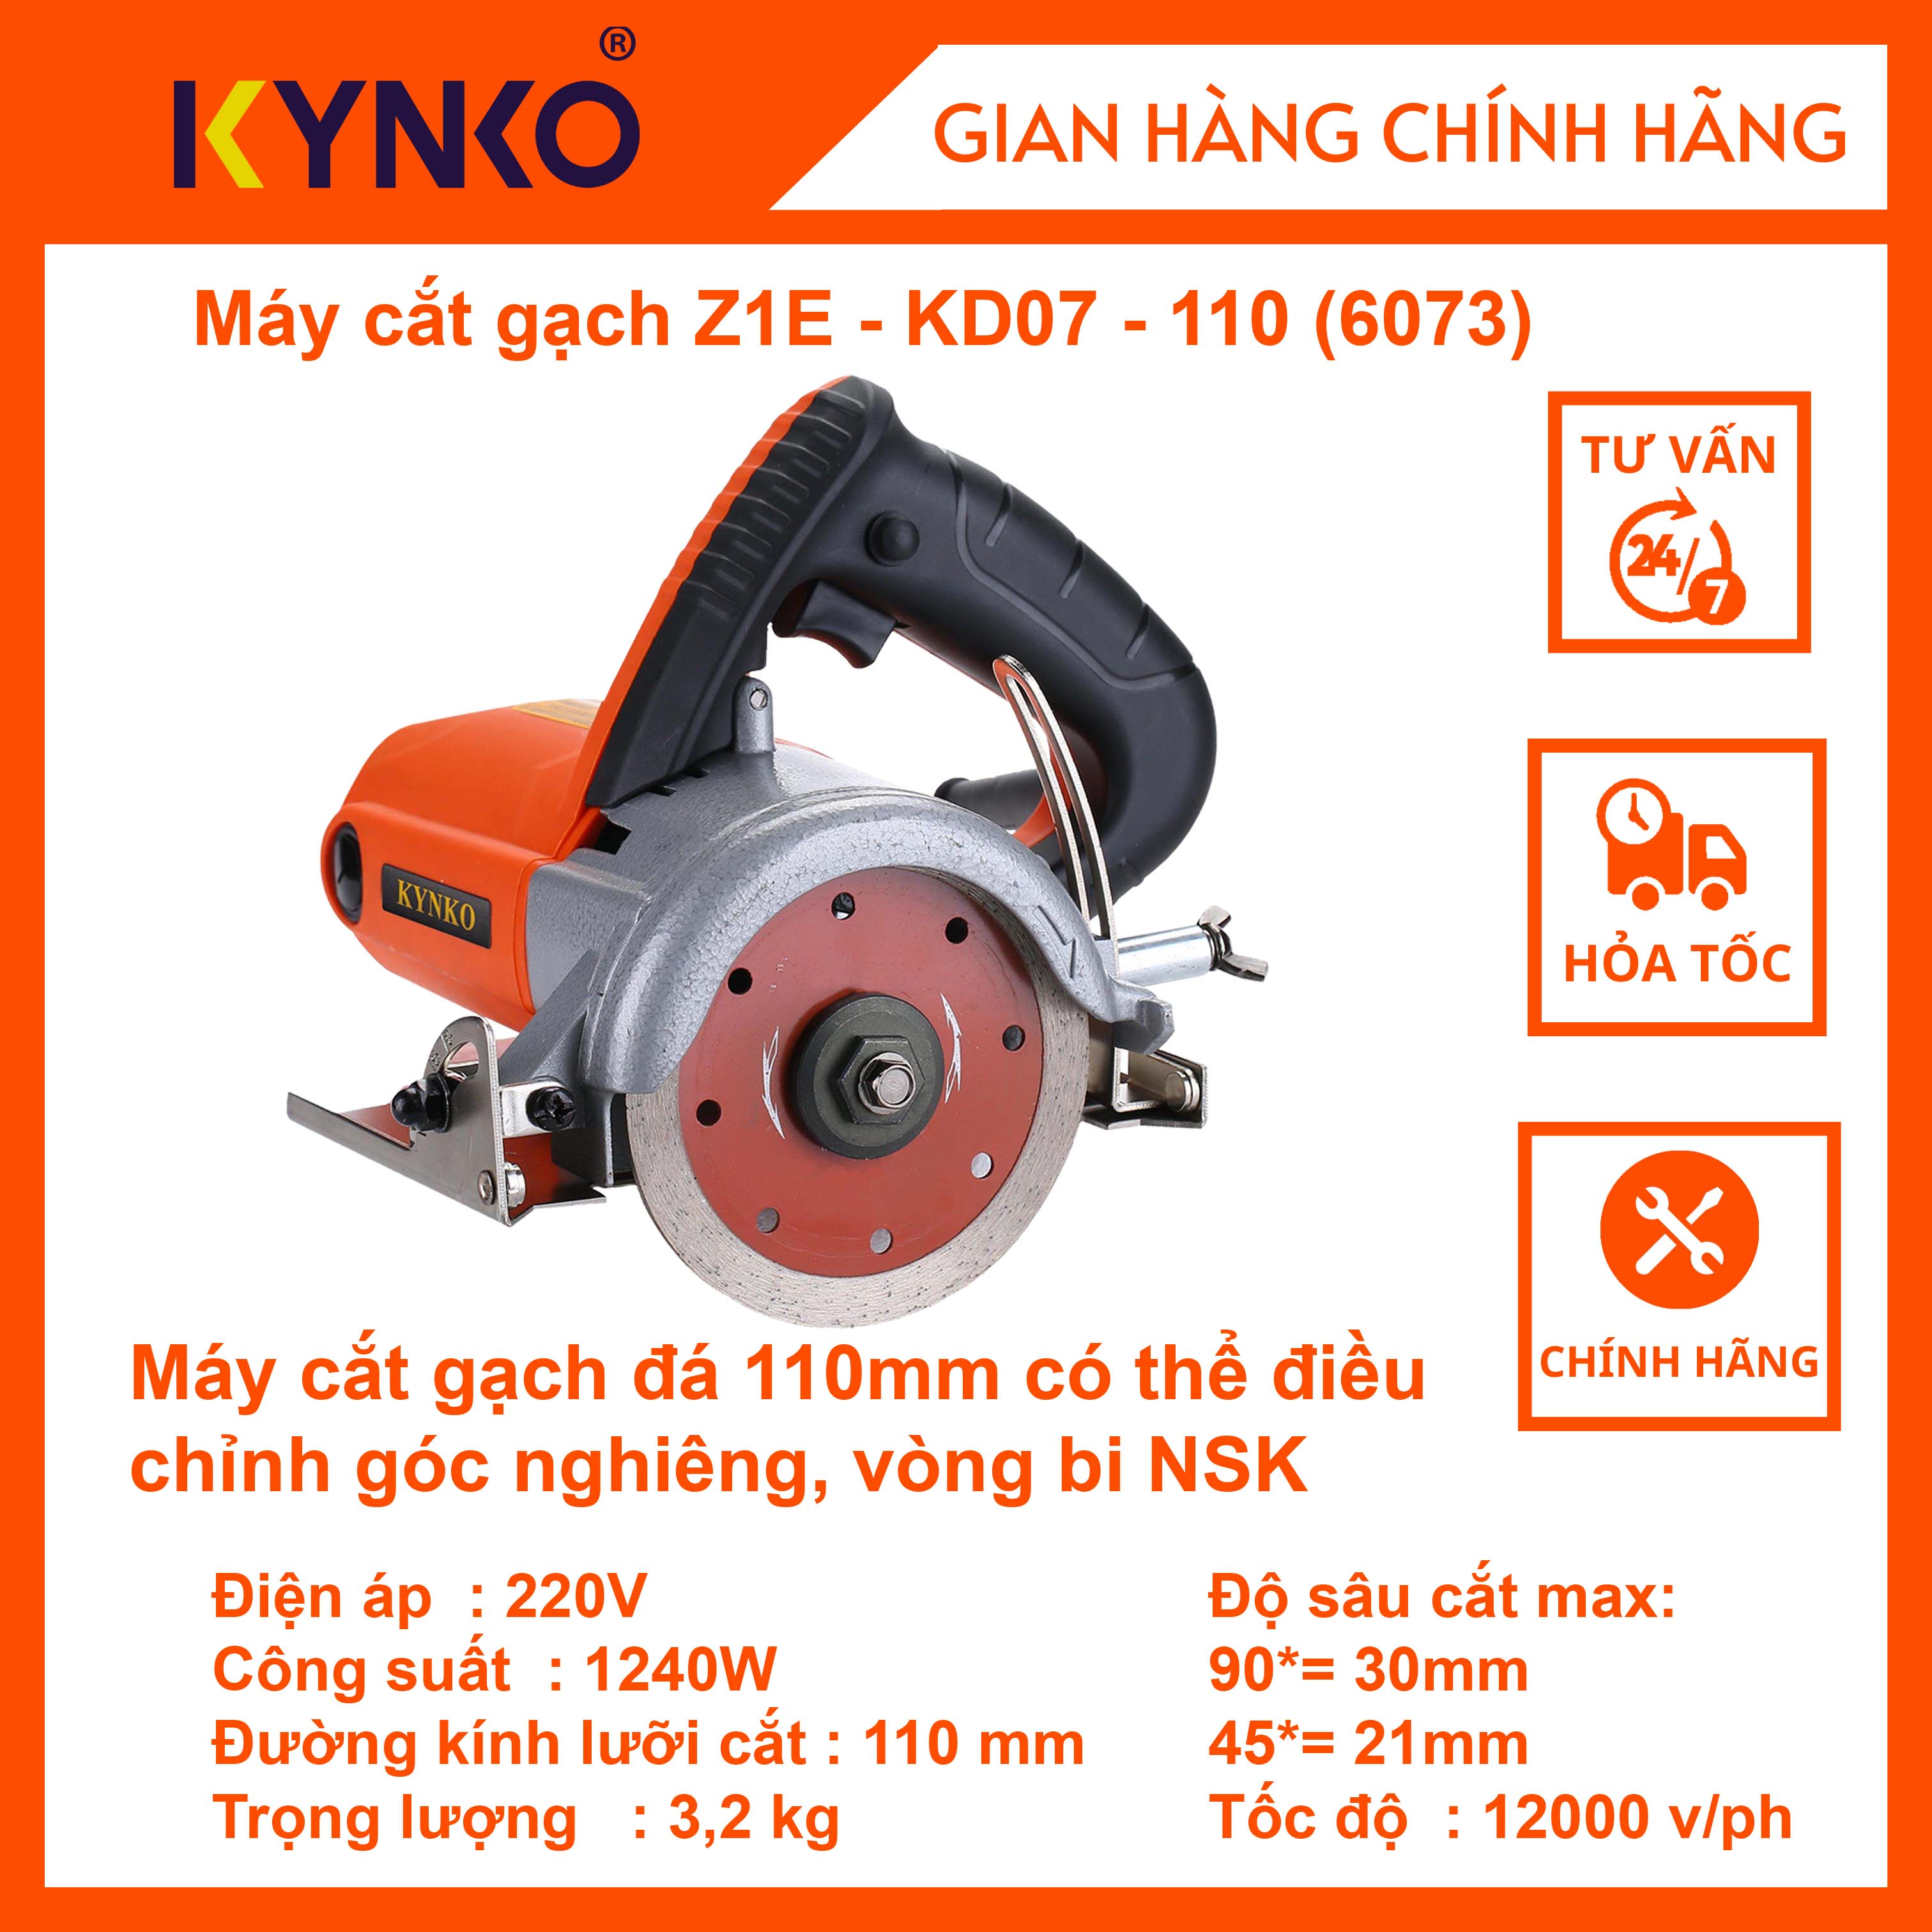 Máy cắt gạch cầm tay chính hãng Kynko Z1E-KD07-110 có điều chỉnh góc cắt #6073 GIÁ TỐT